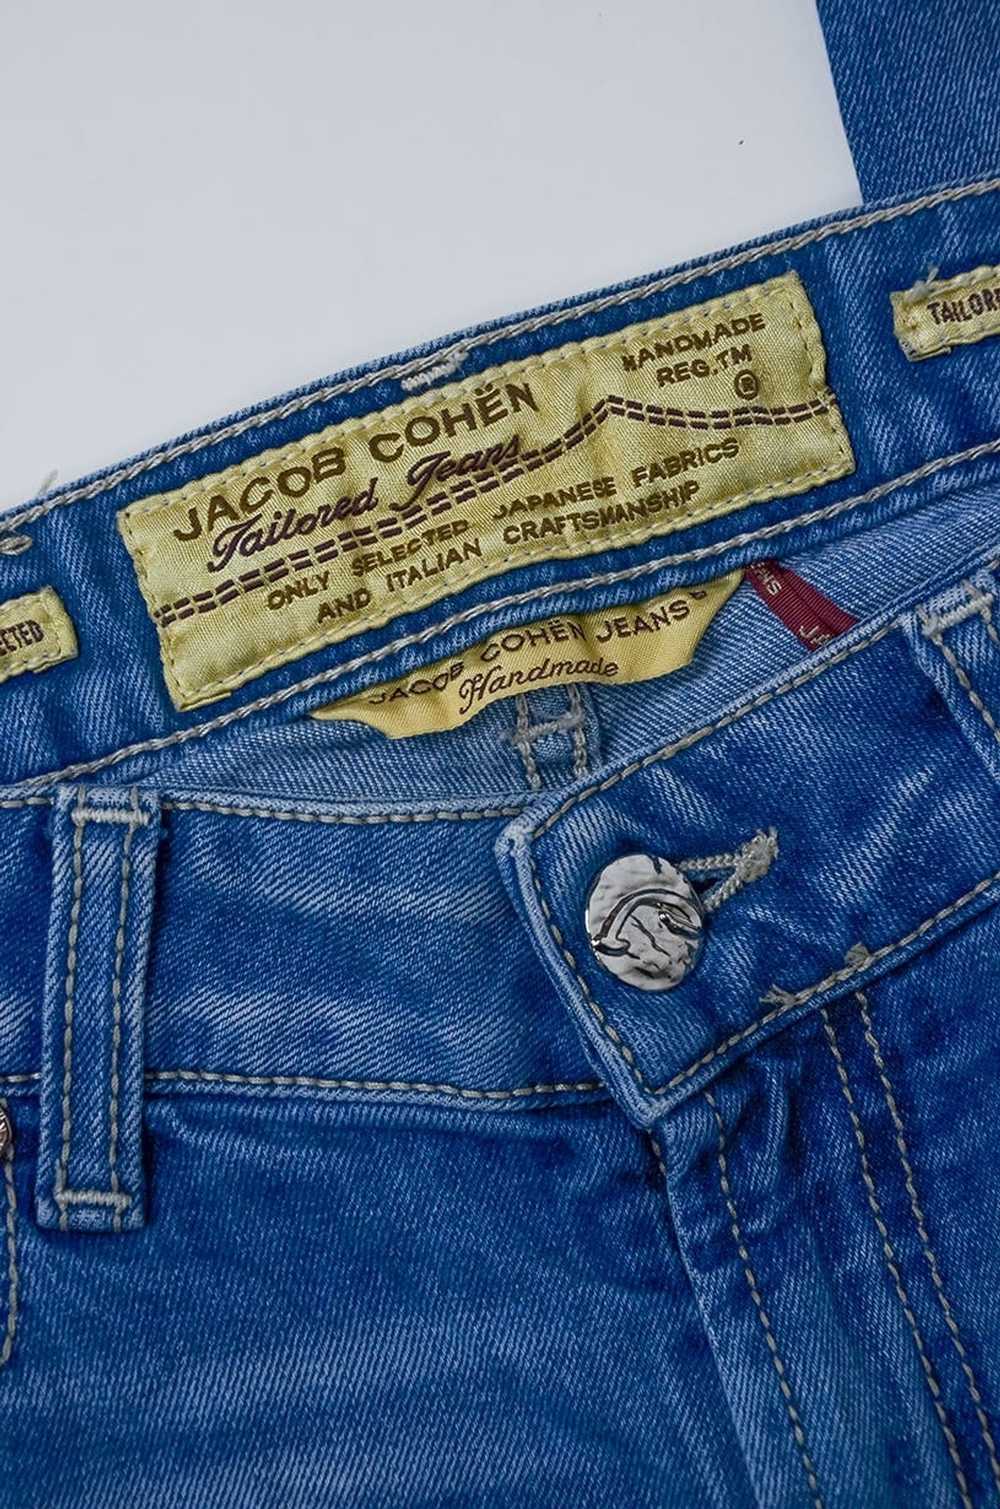 Jacob Cohen JACOB COHEN Tailored Jeans - image 4